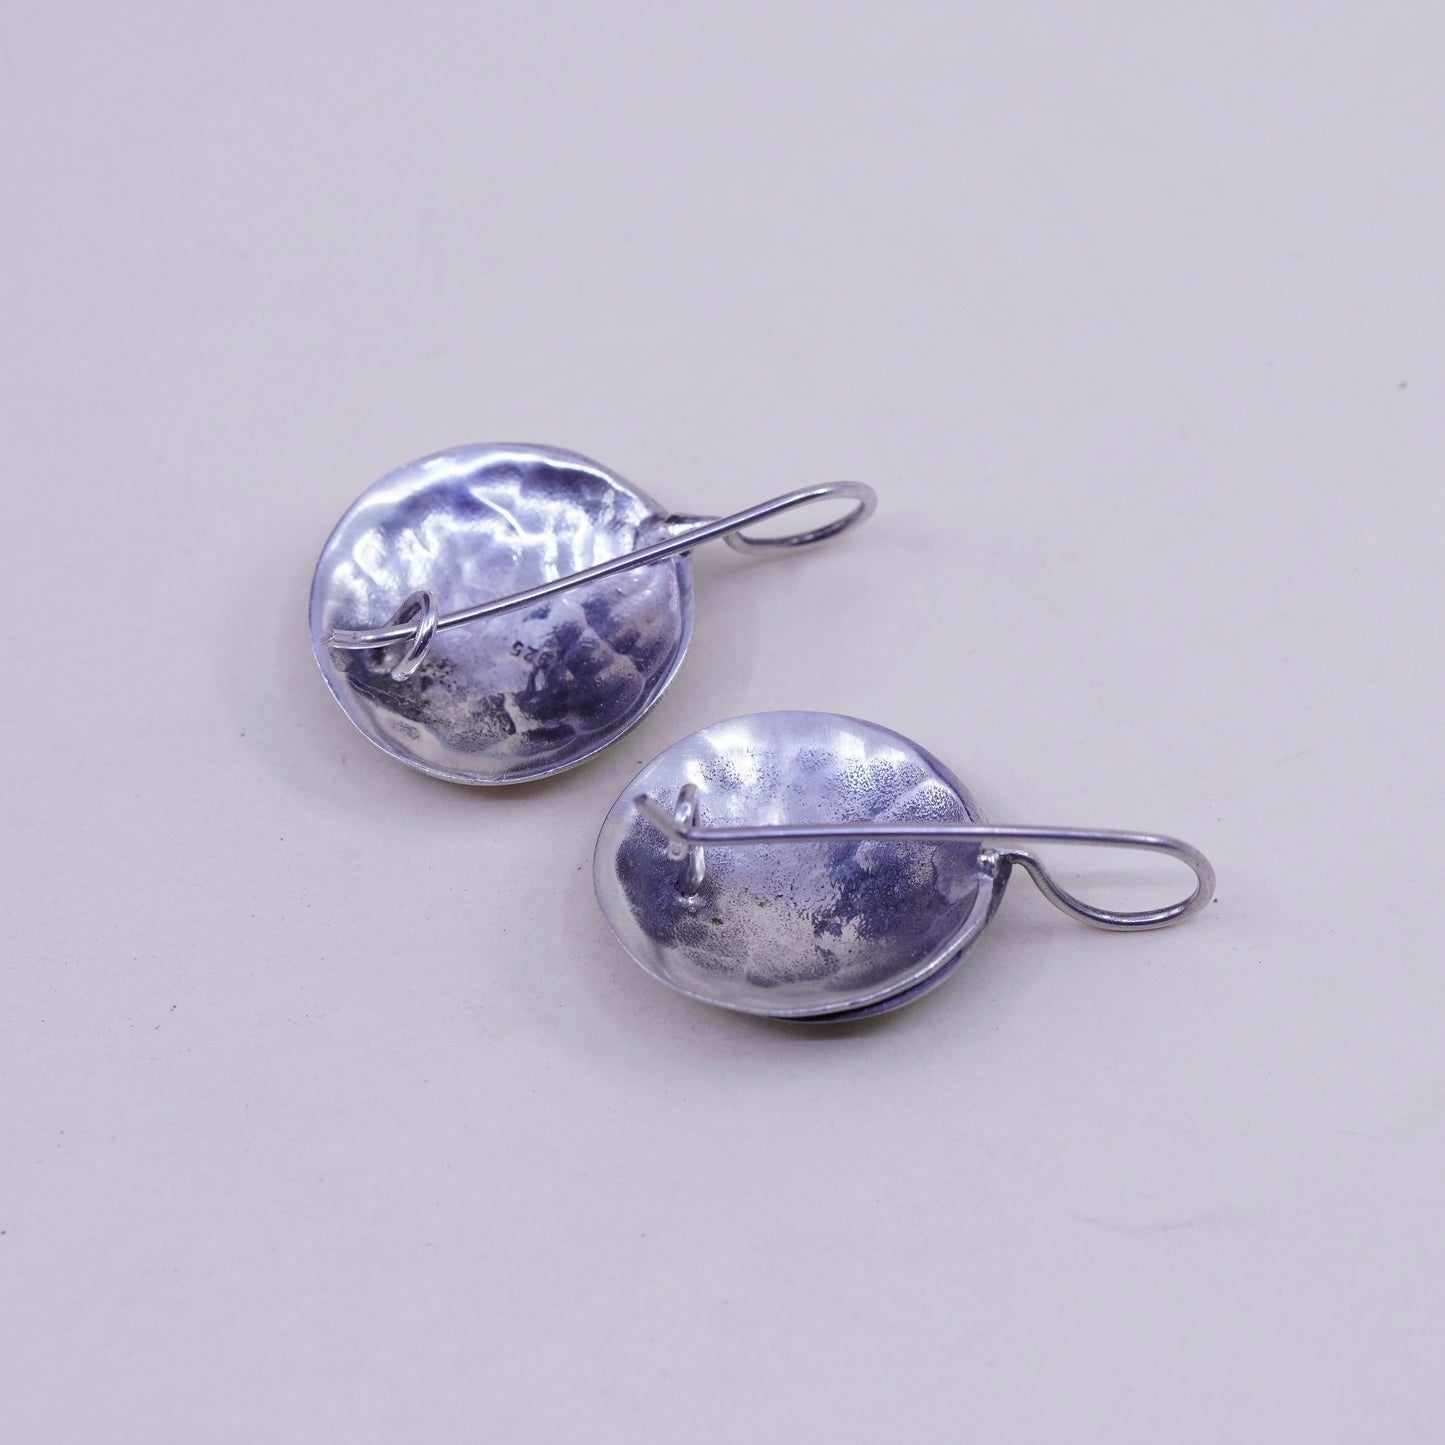 Vintage Sterling silver handmade earrings, hammered 925 swirl earrings